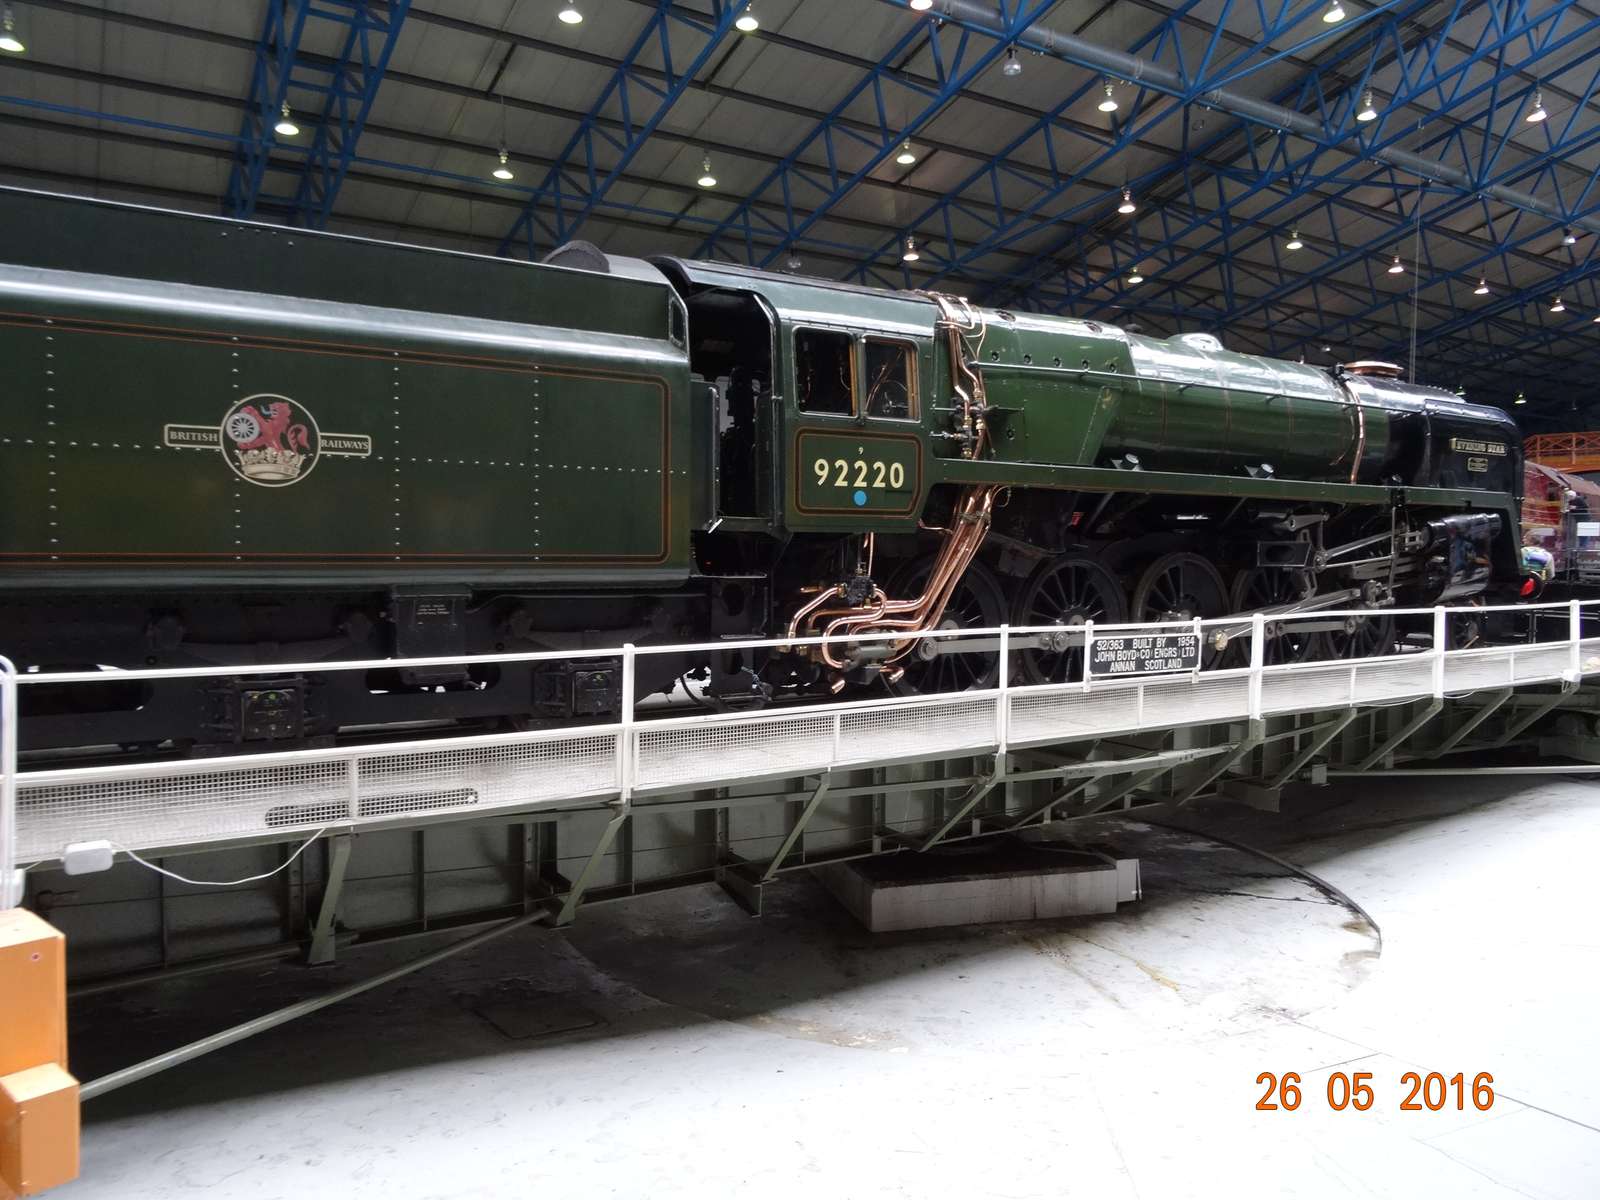 Locomotiva a vapor York England 1954 puzzle online a partir de fotografia